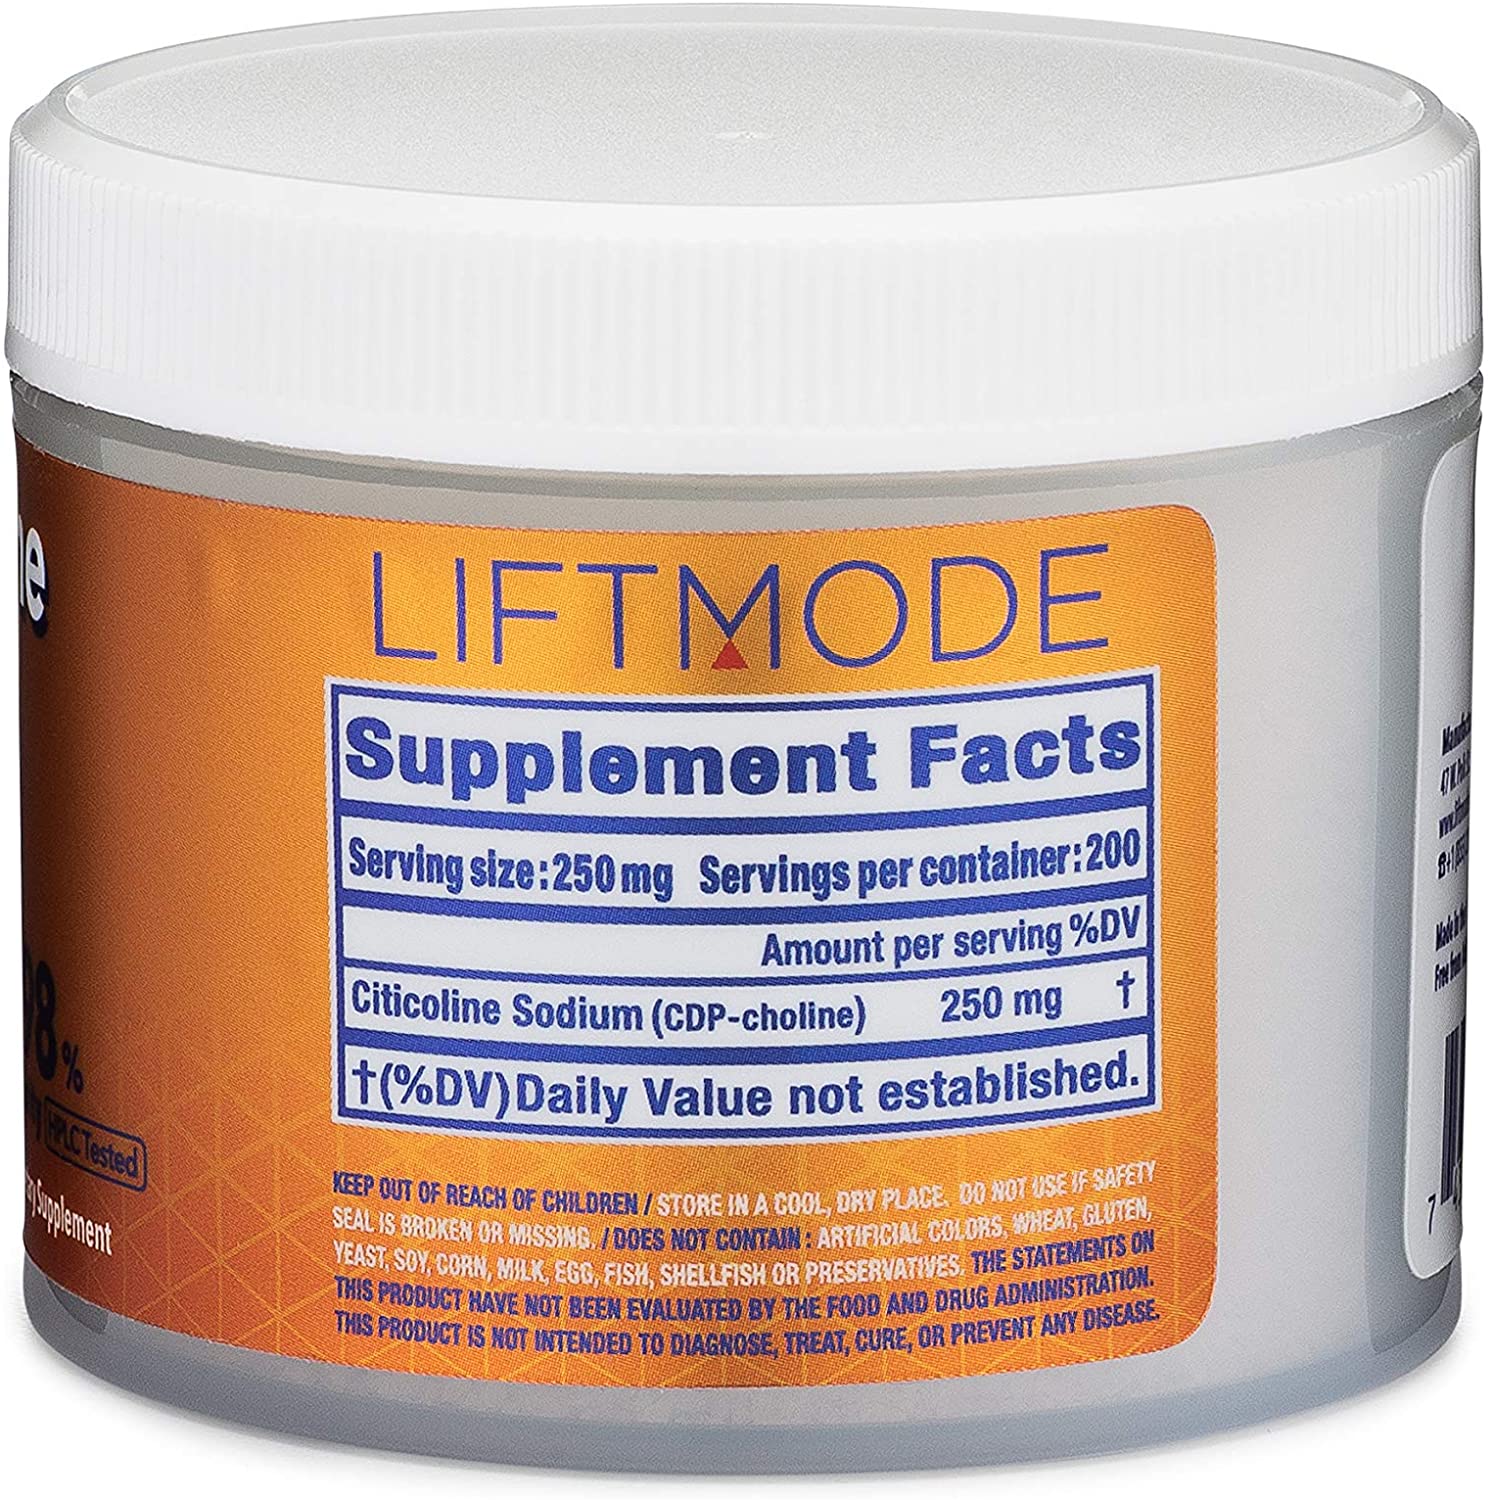 Liftmode Citicoline Powder - 50 g-1